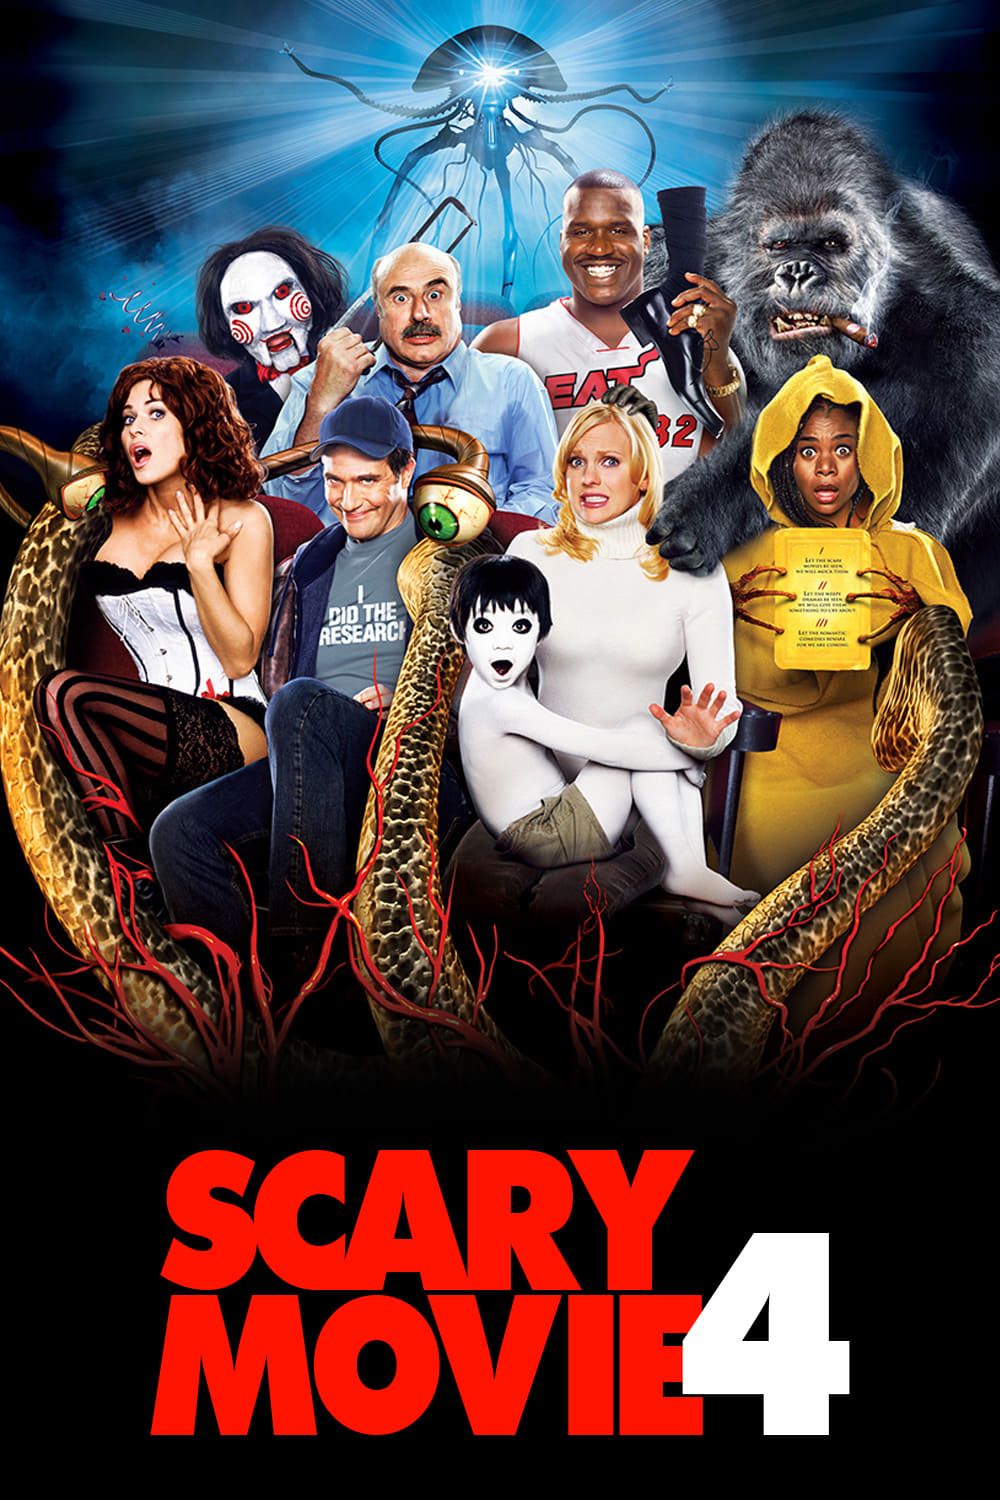 Scary Movie 4 (2006) MovieWeb